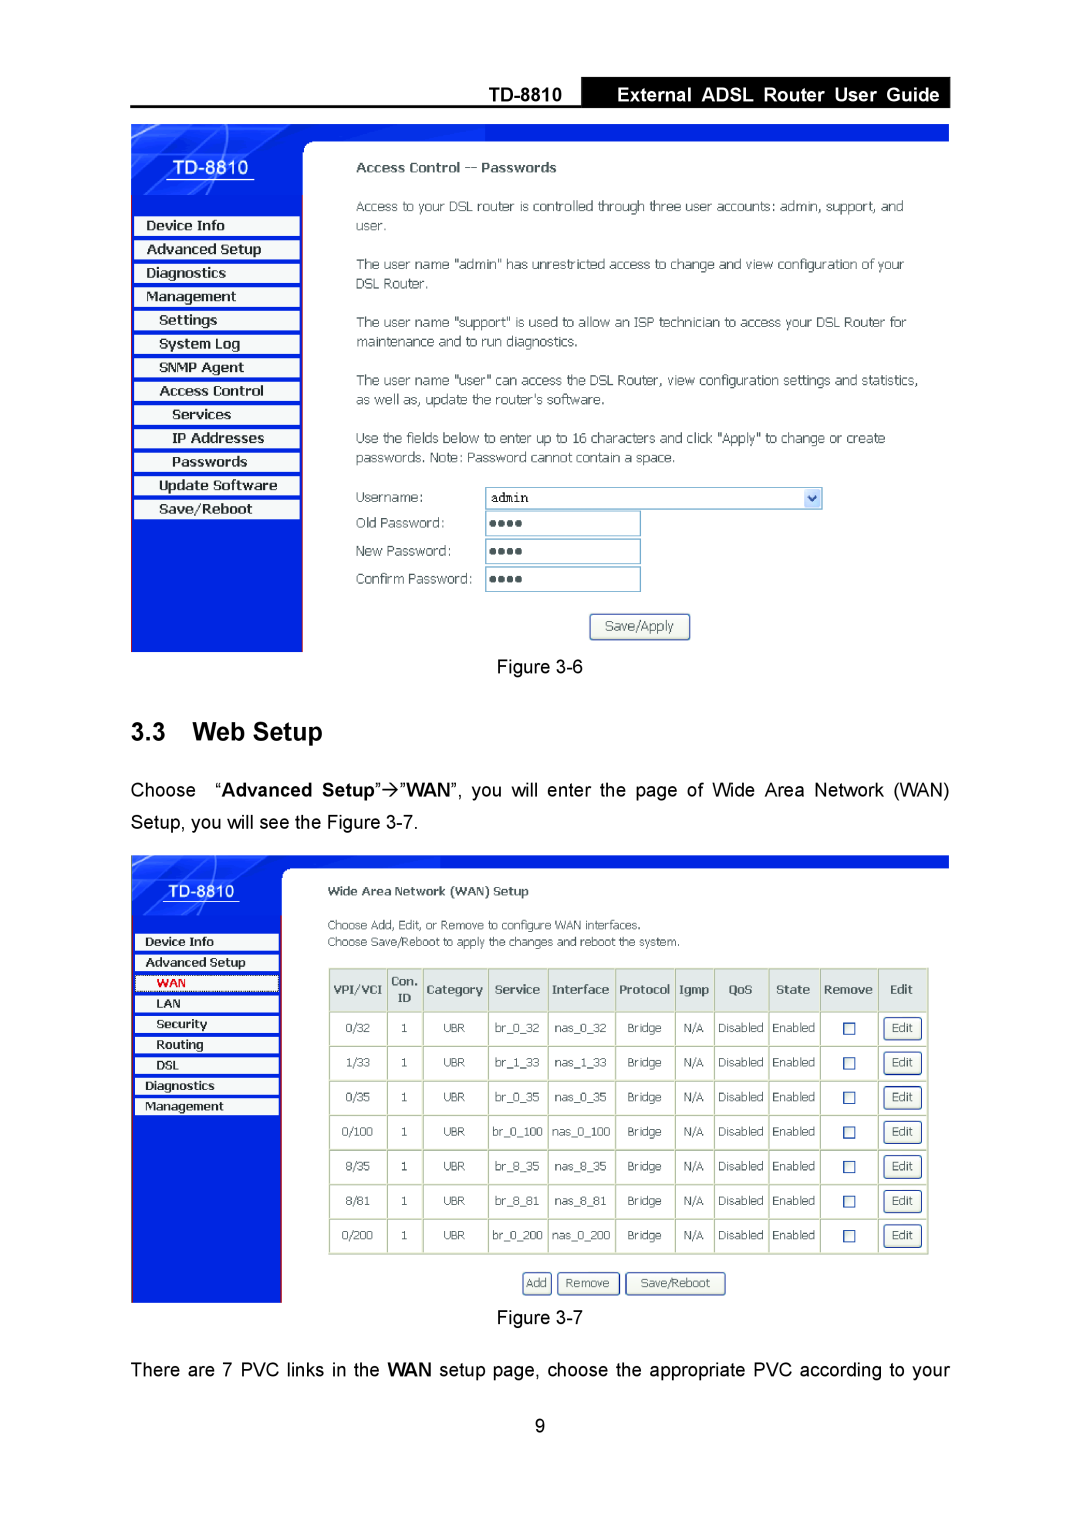 TP-Link TD-8810B manual Web Setup, External ADSL Router User Guide 